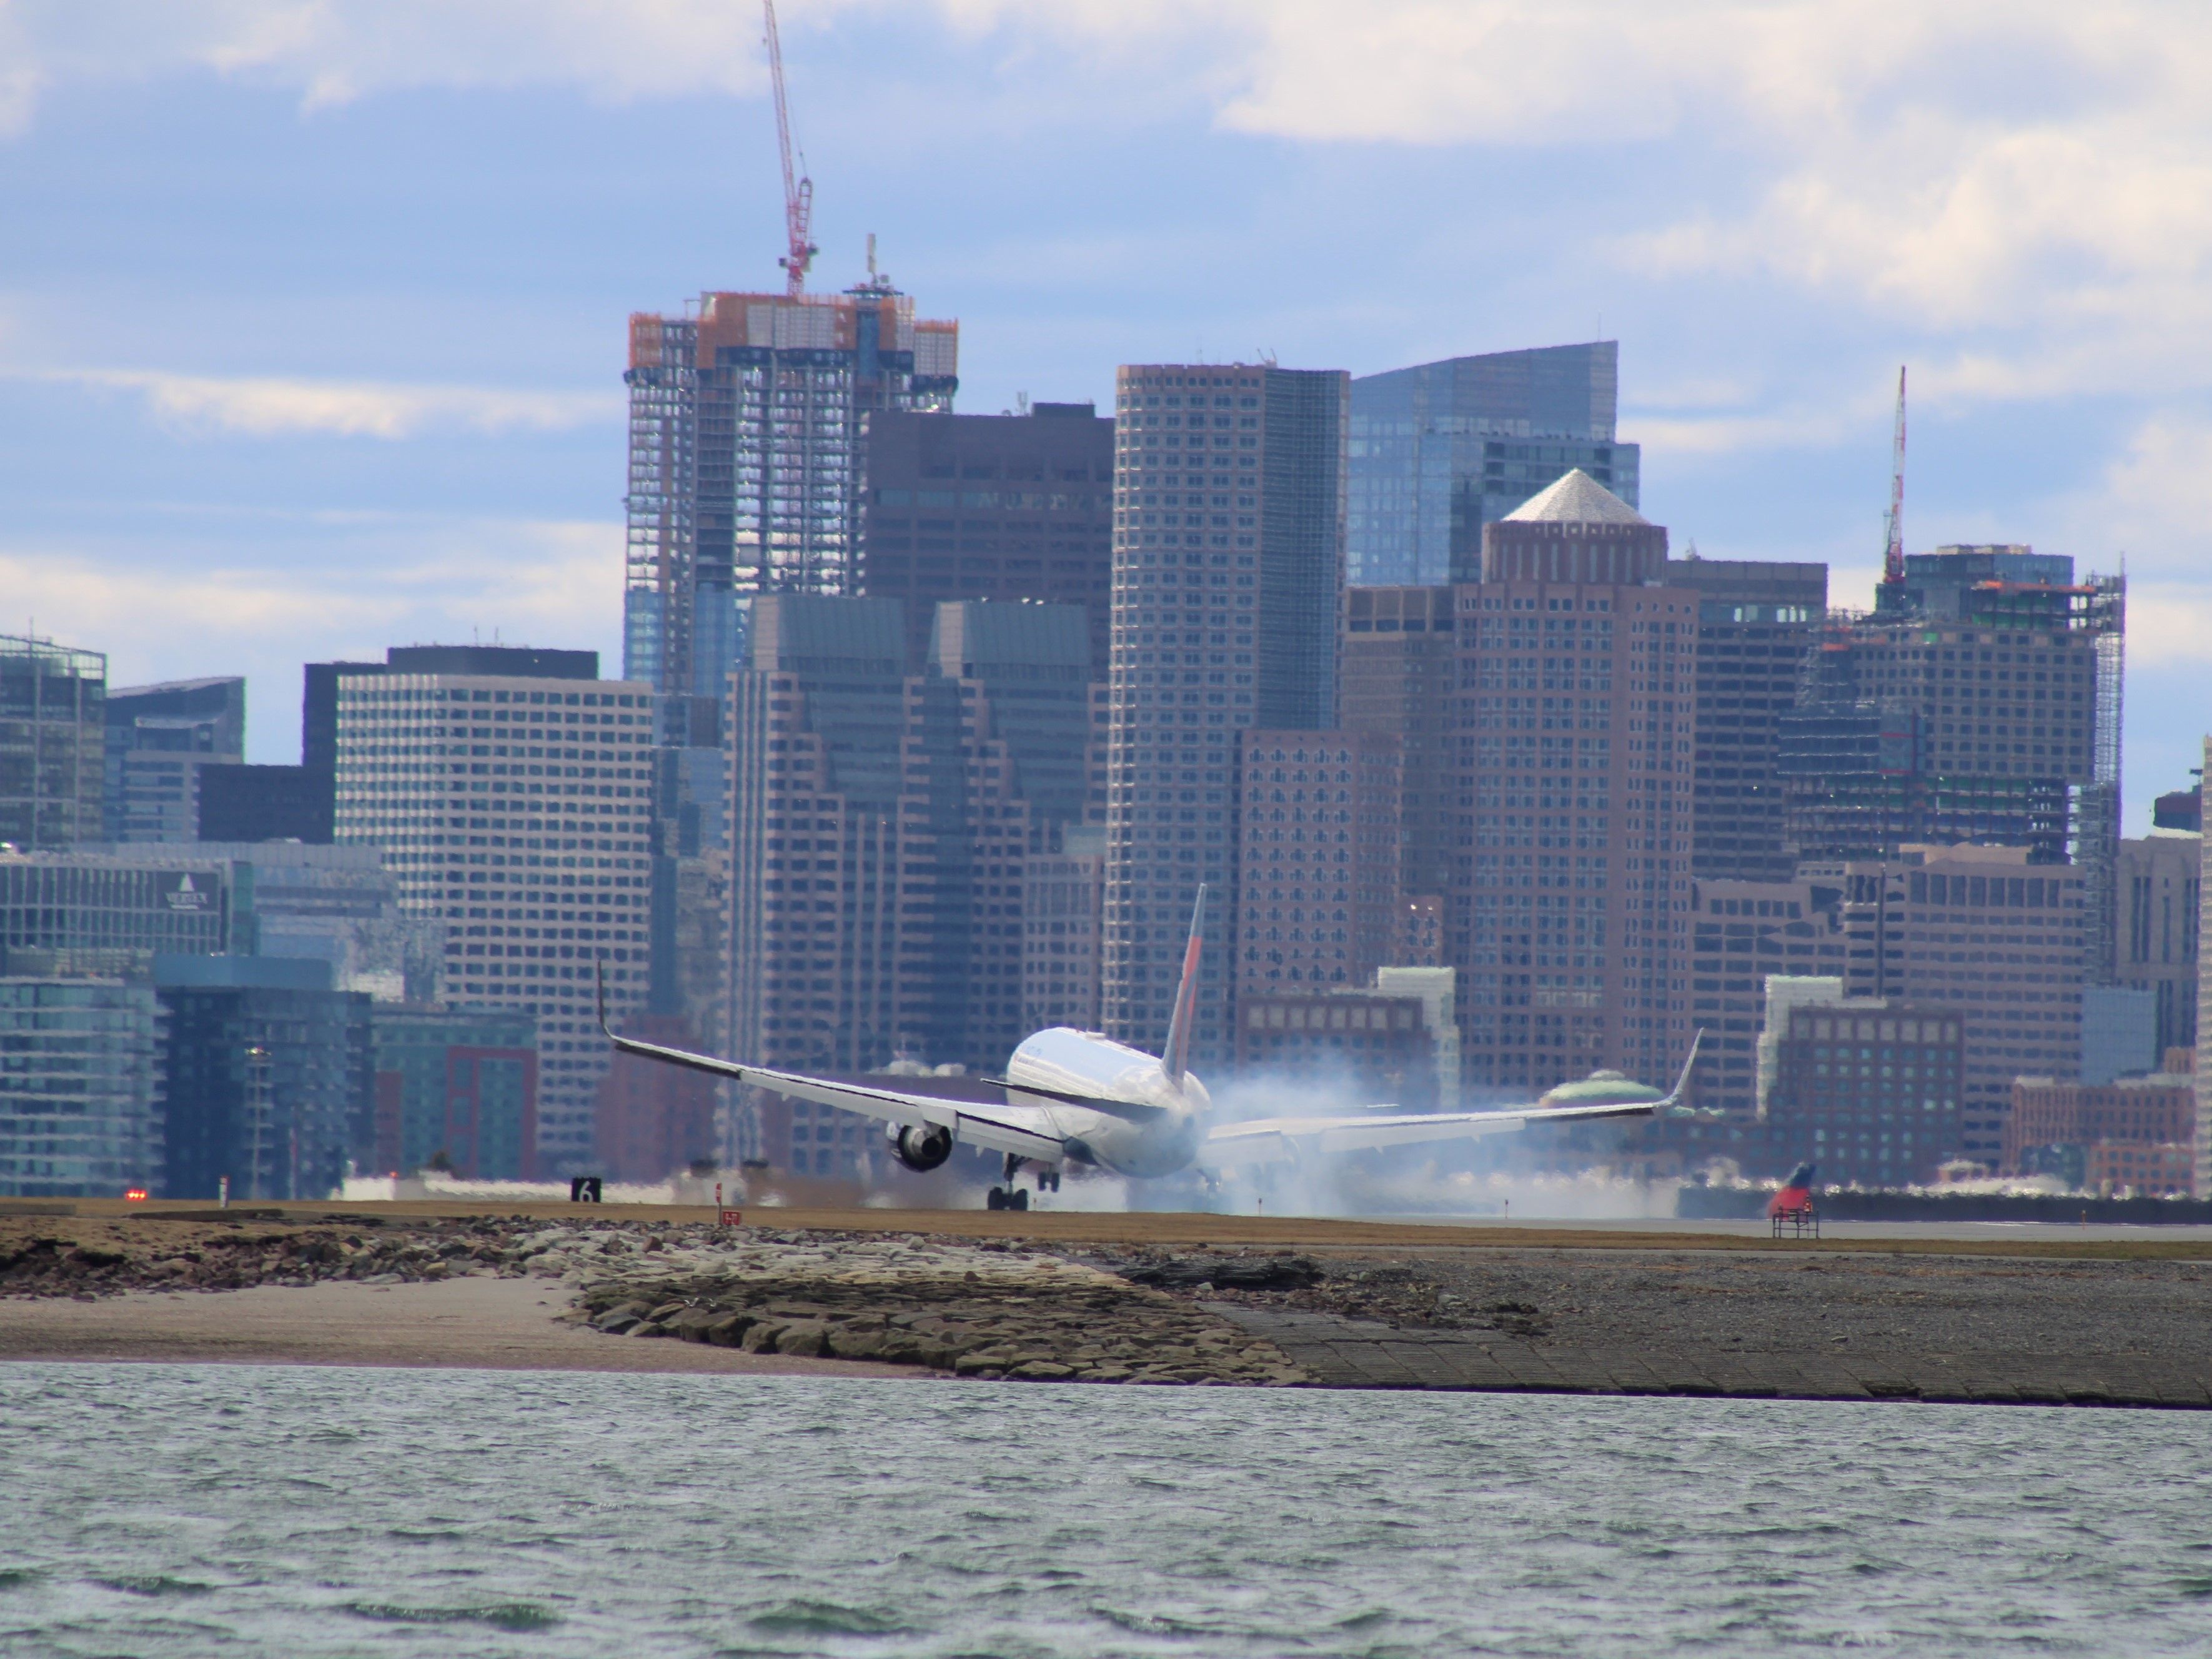 Delta Air Lines Boeing 767-300ER in Boston